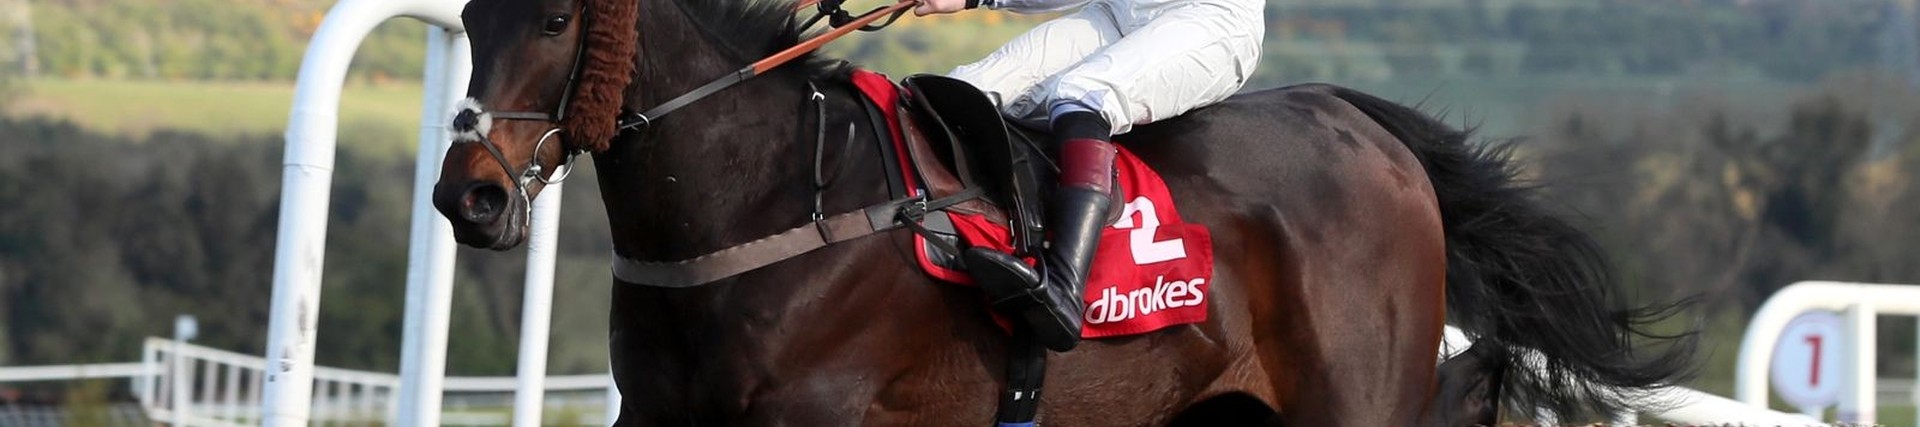 Morson-sponsored horse Clan Des Obeaux retires after winning career